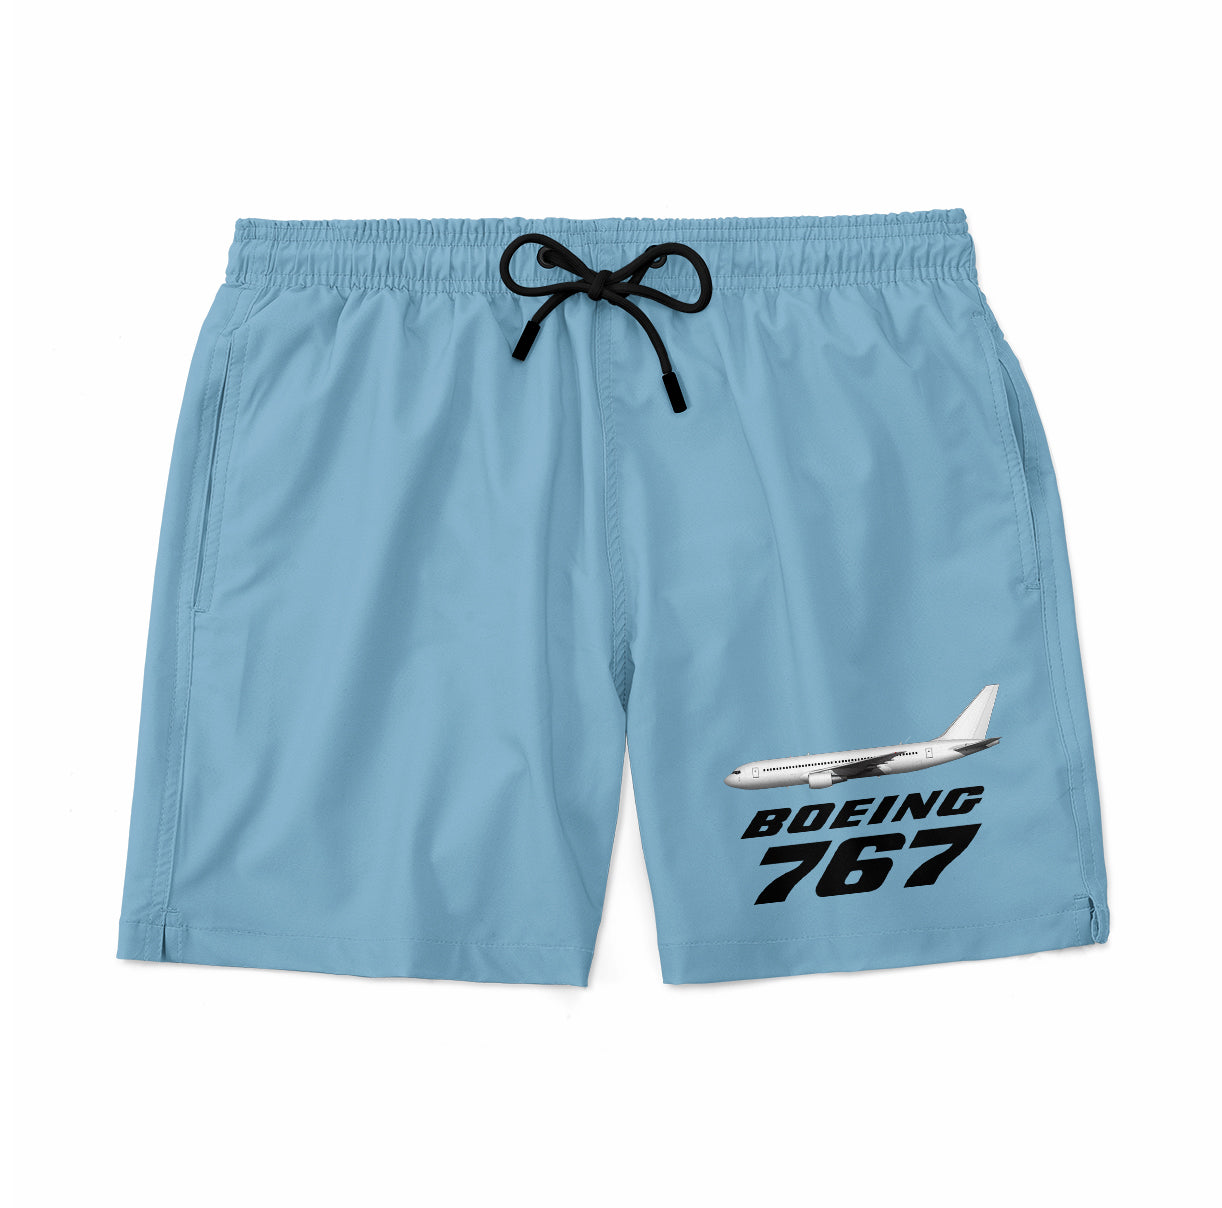 The Boeing 767 Designed Swim Trunks & Shorts